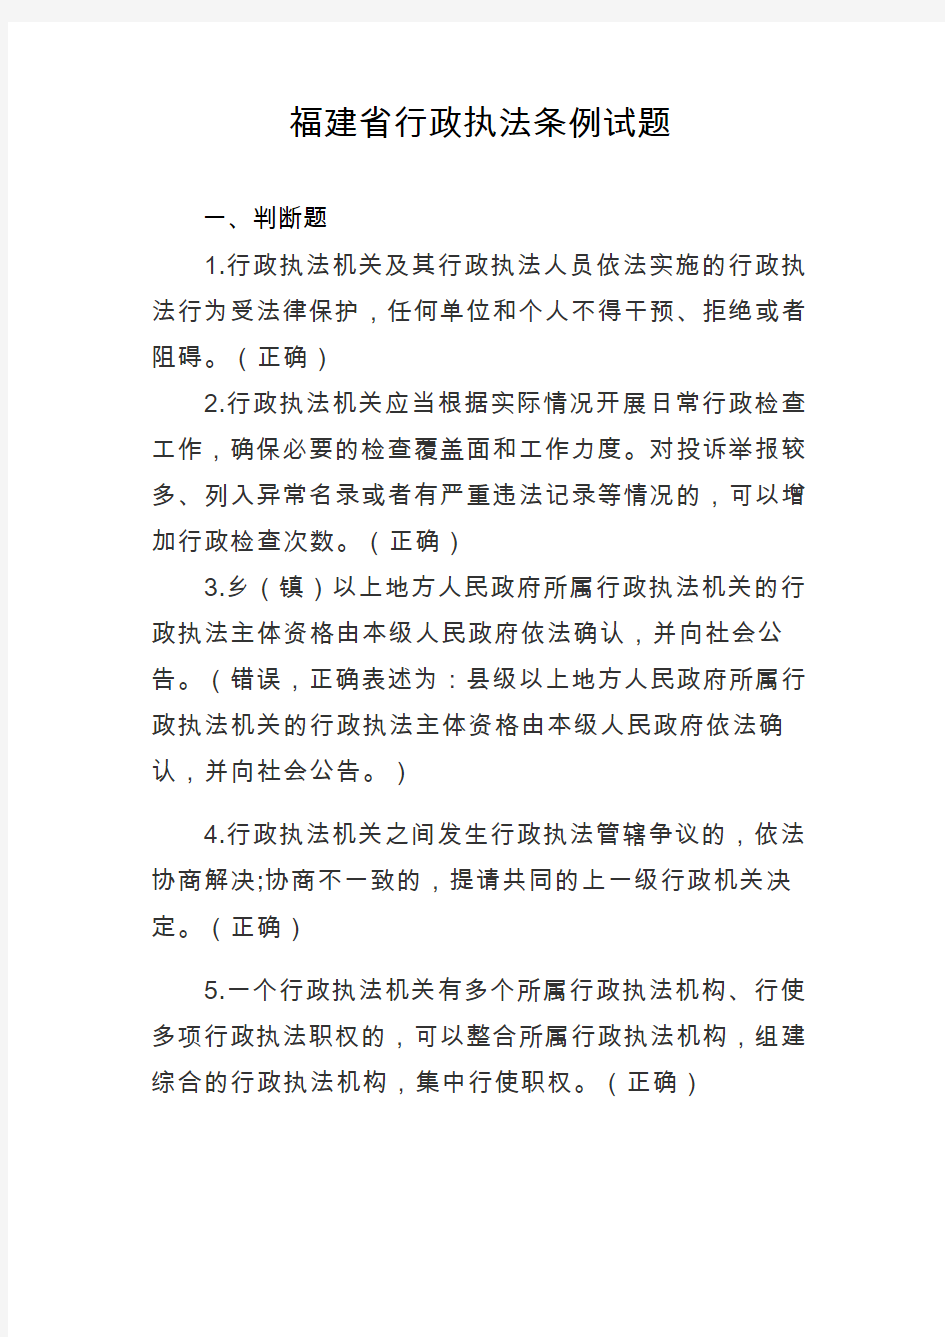 2.《福建省行政执法条例》练习题